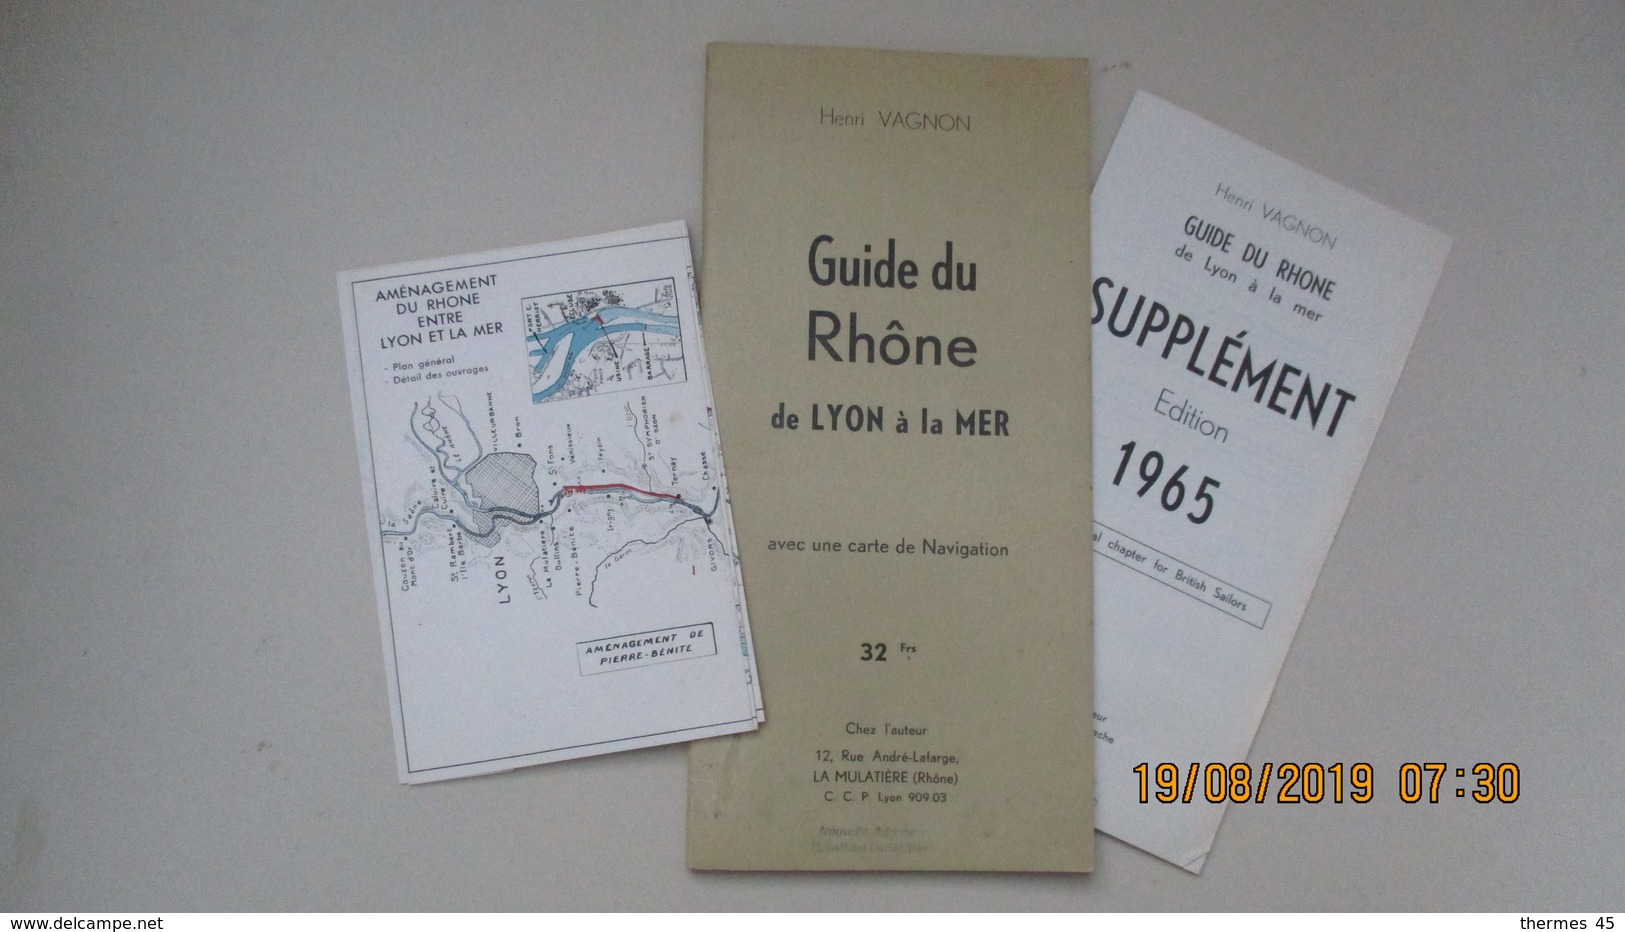 GUIDE DU RHÔNE De LYON à La MER / HENRI VAGNON / 1964 - Carte Nautiche